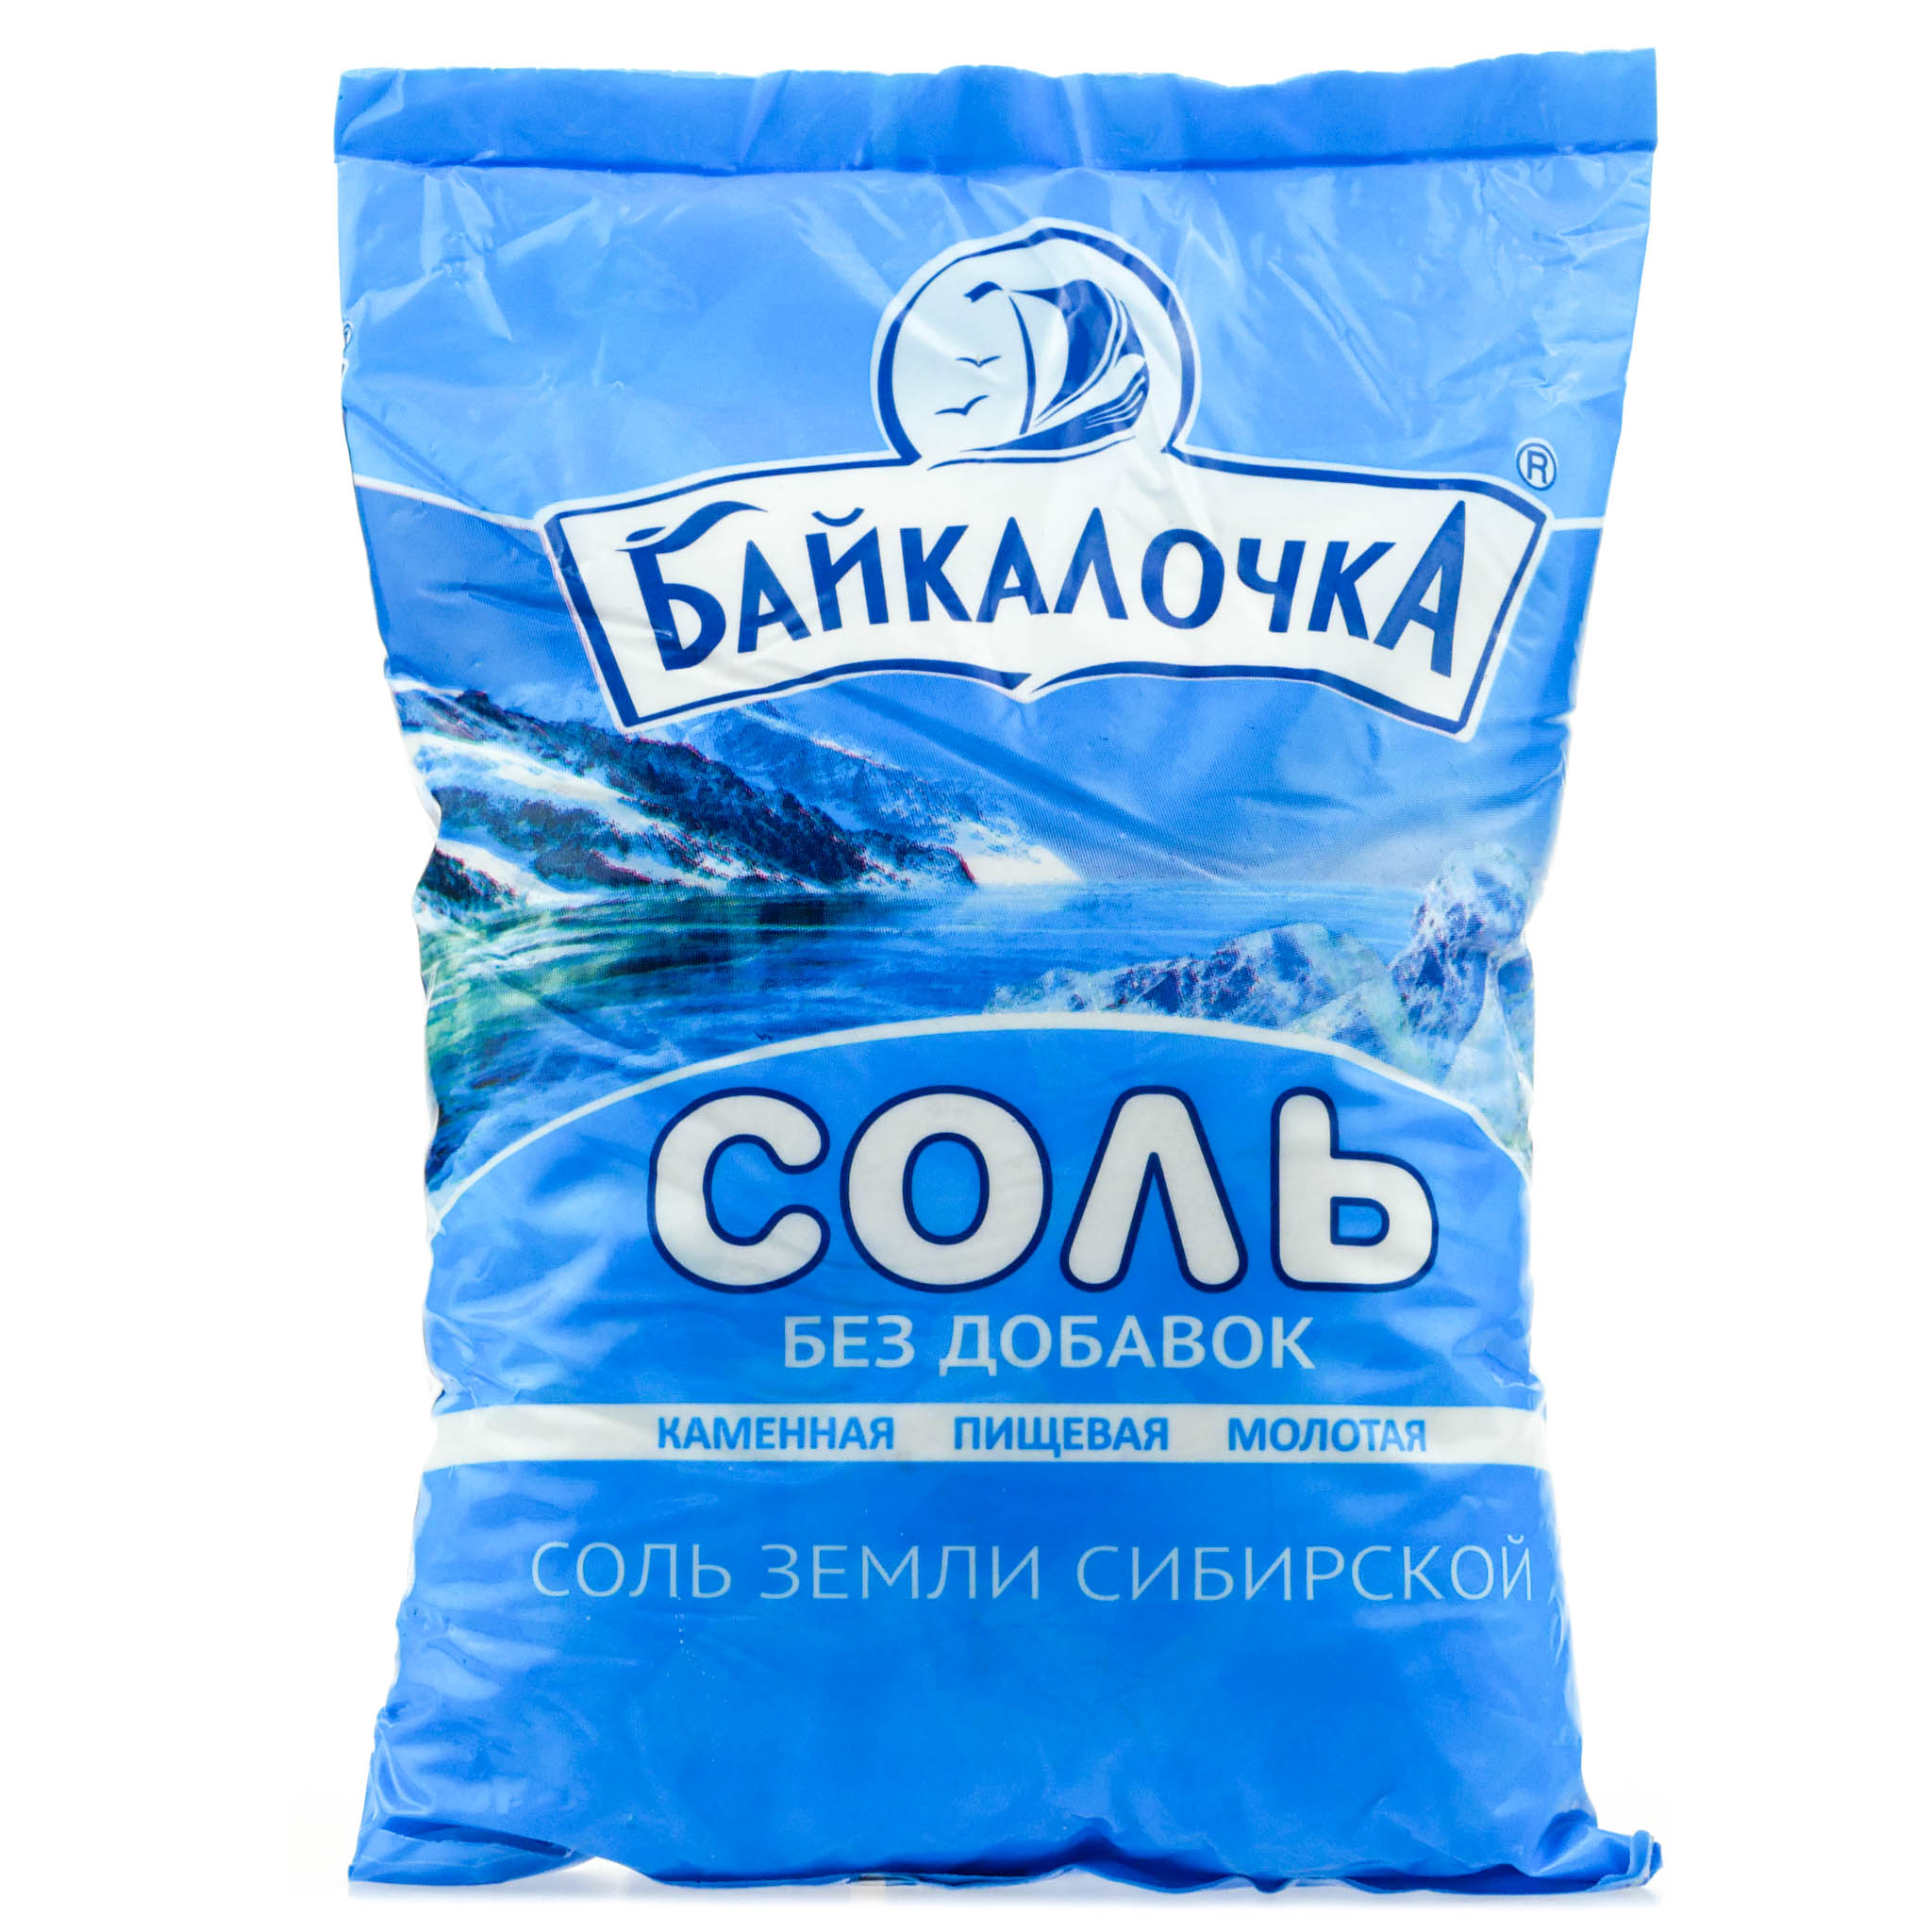 Соль купить украине привычка зависимость человек наркотик